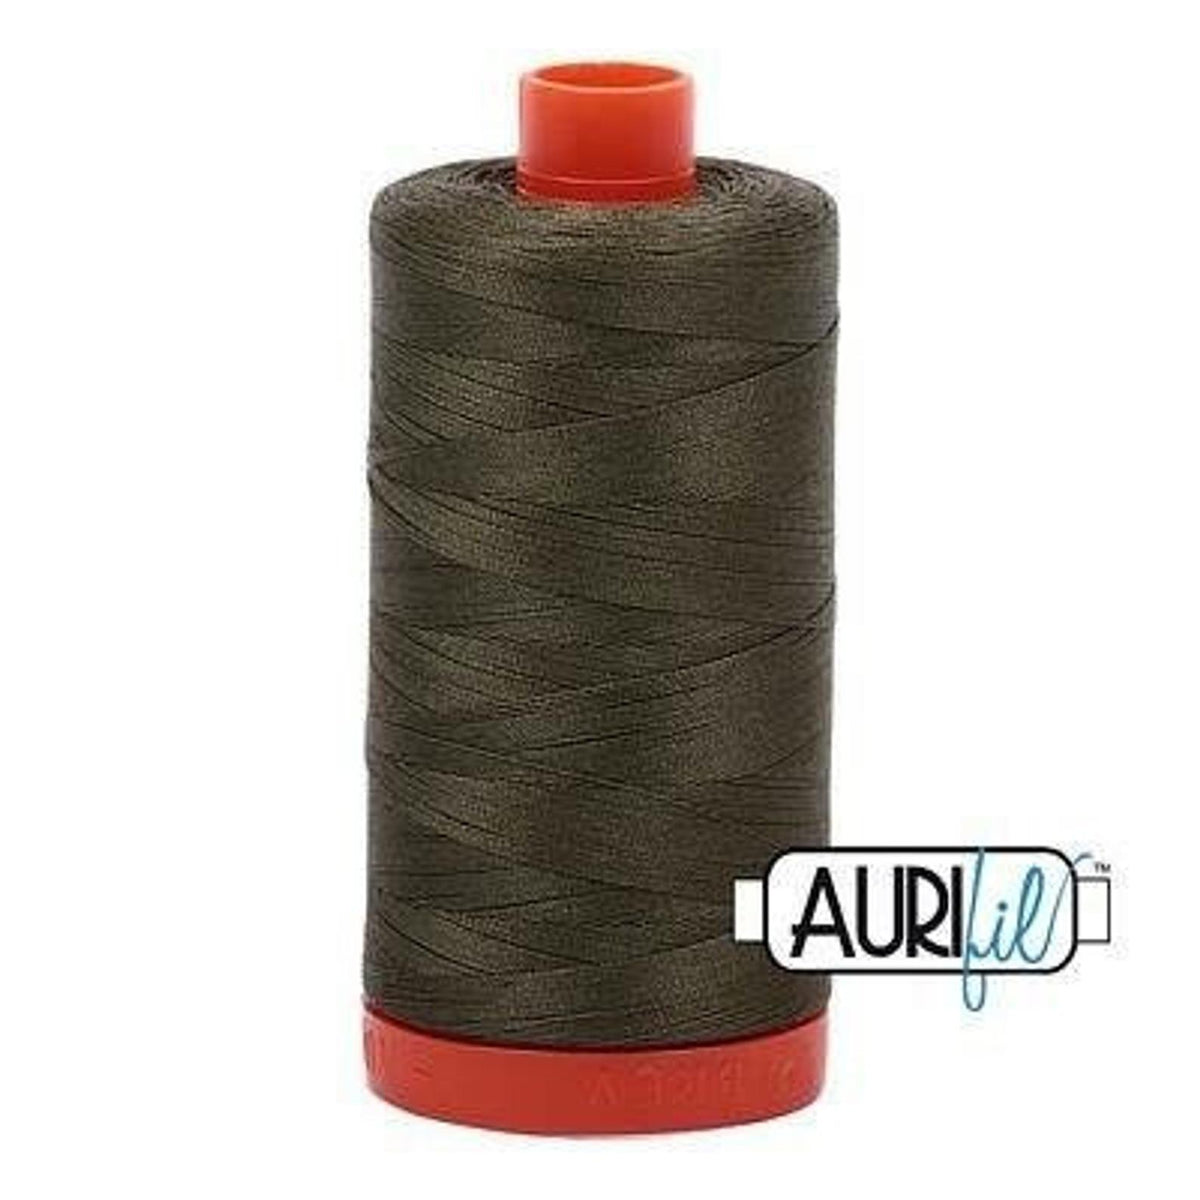 Aurifil 50 wt cotton thread, 1300m, Army Green (2905)